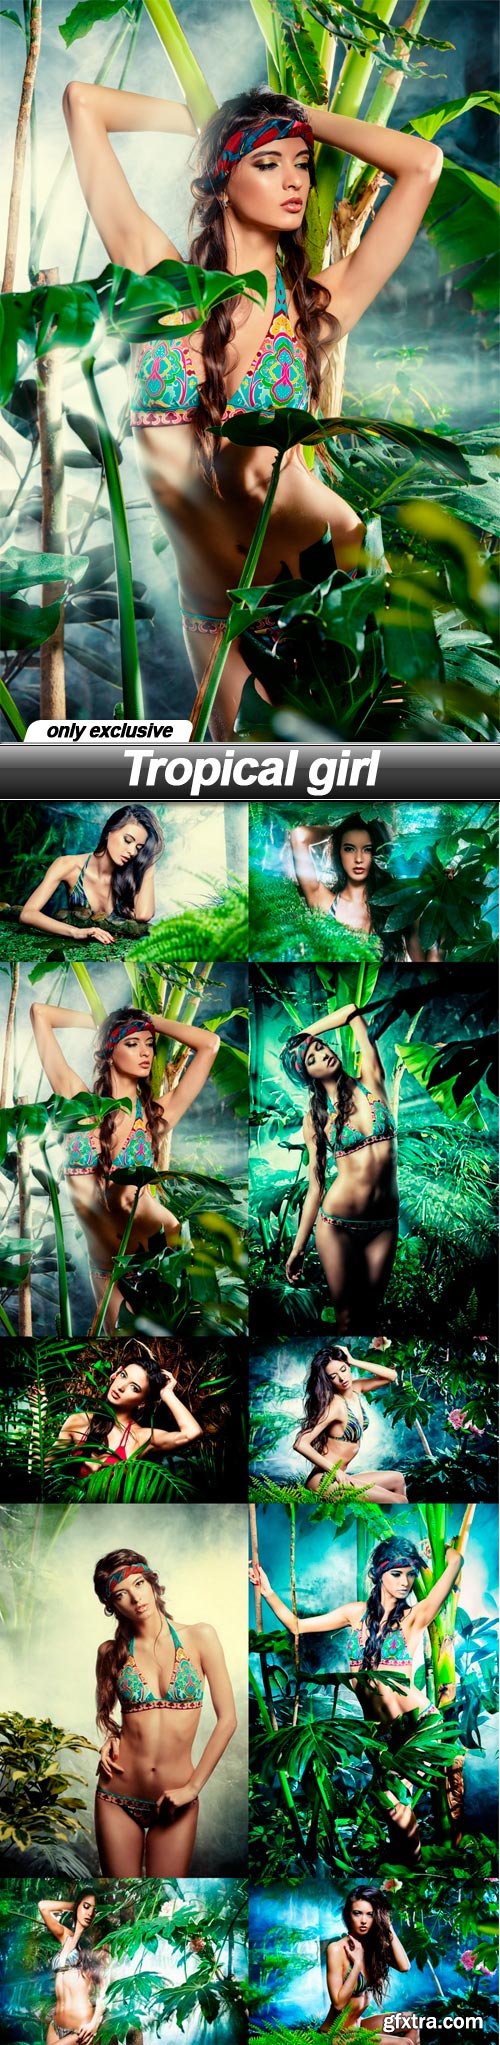 Tropical girl - 10 UHQ JPEG